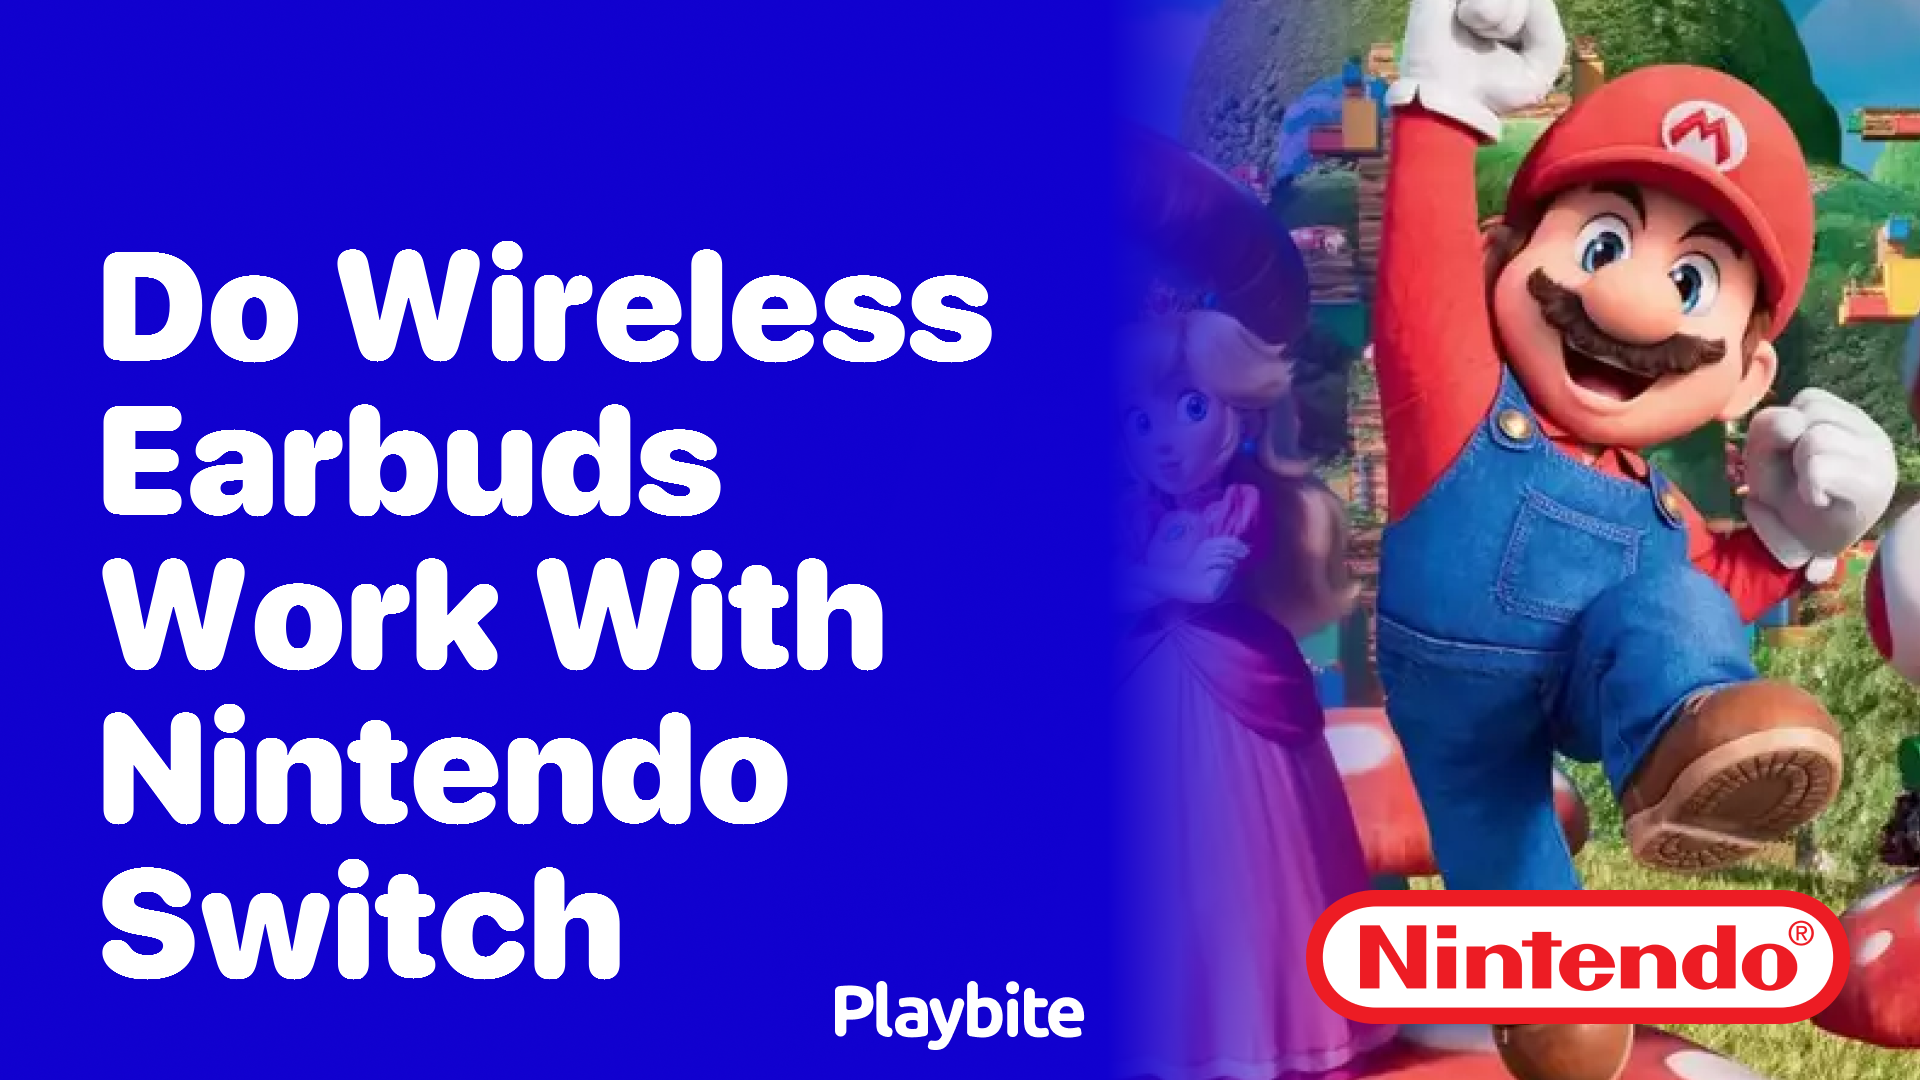 Do Wireless Earbuds Work with Nintendo Switch?